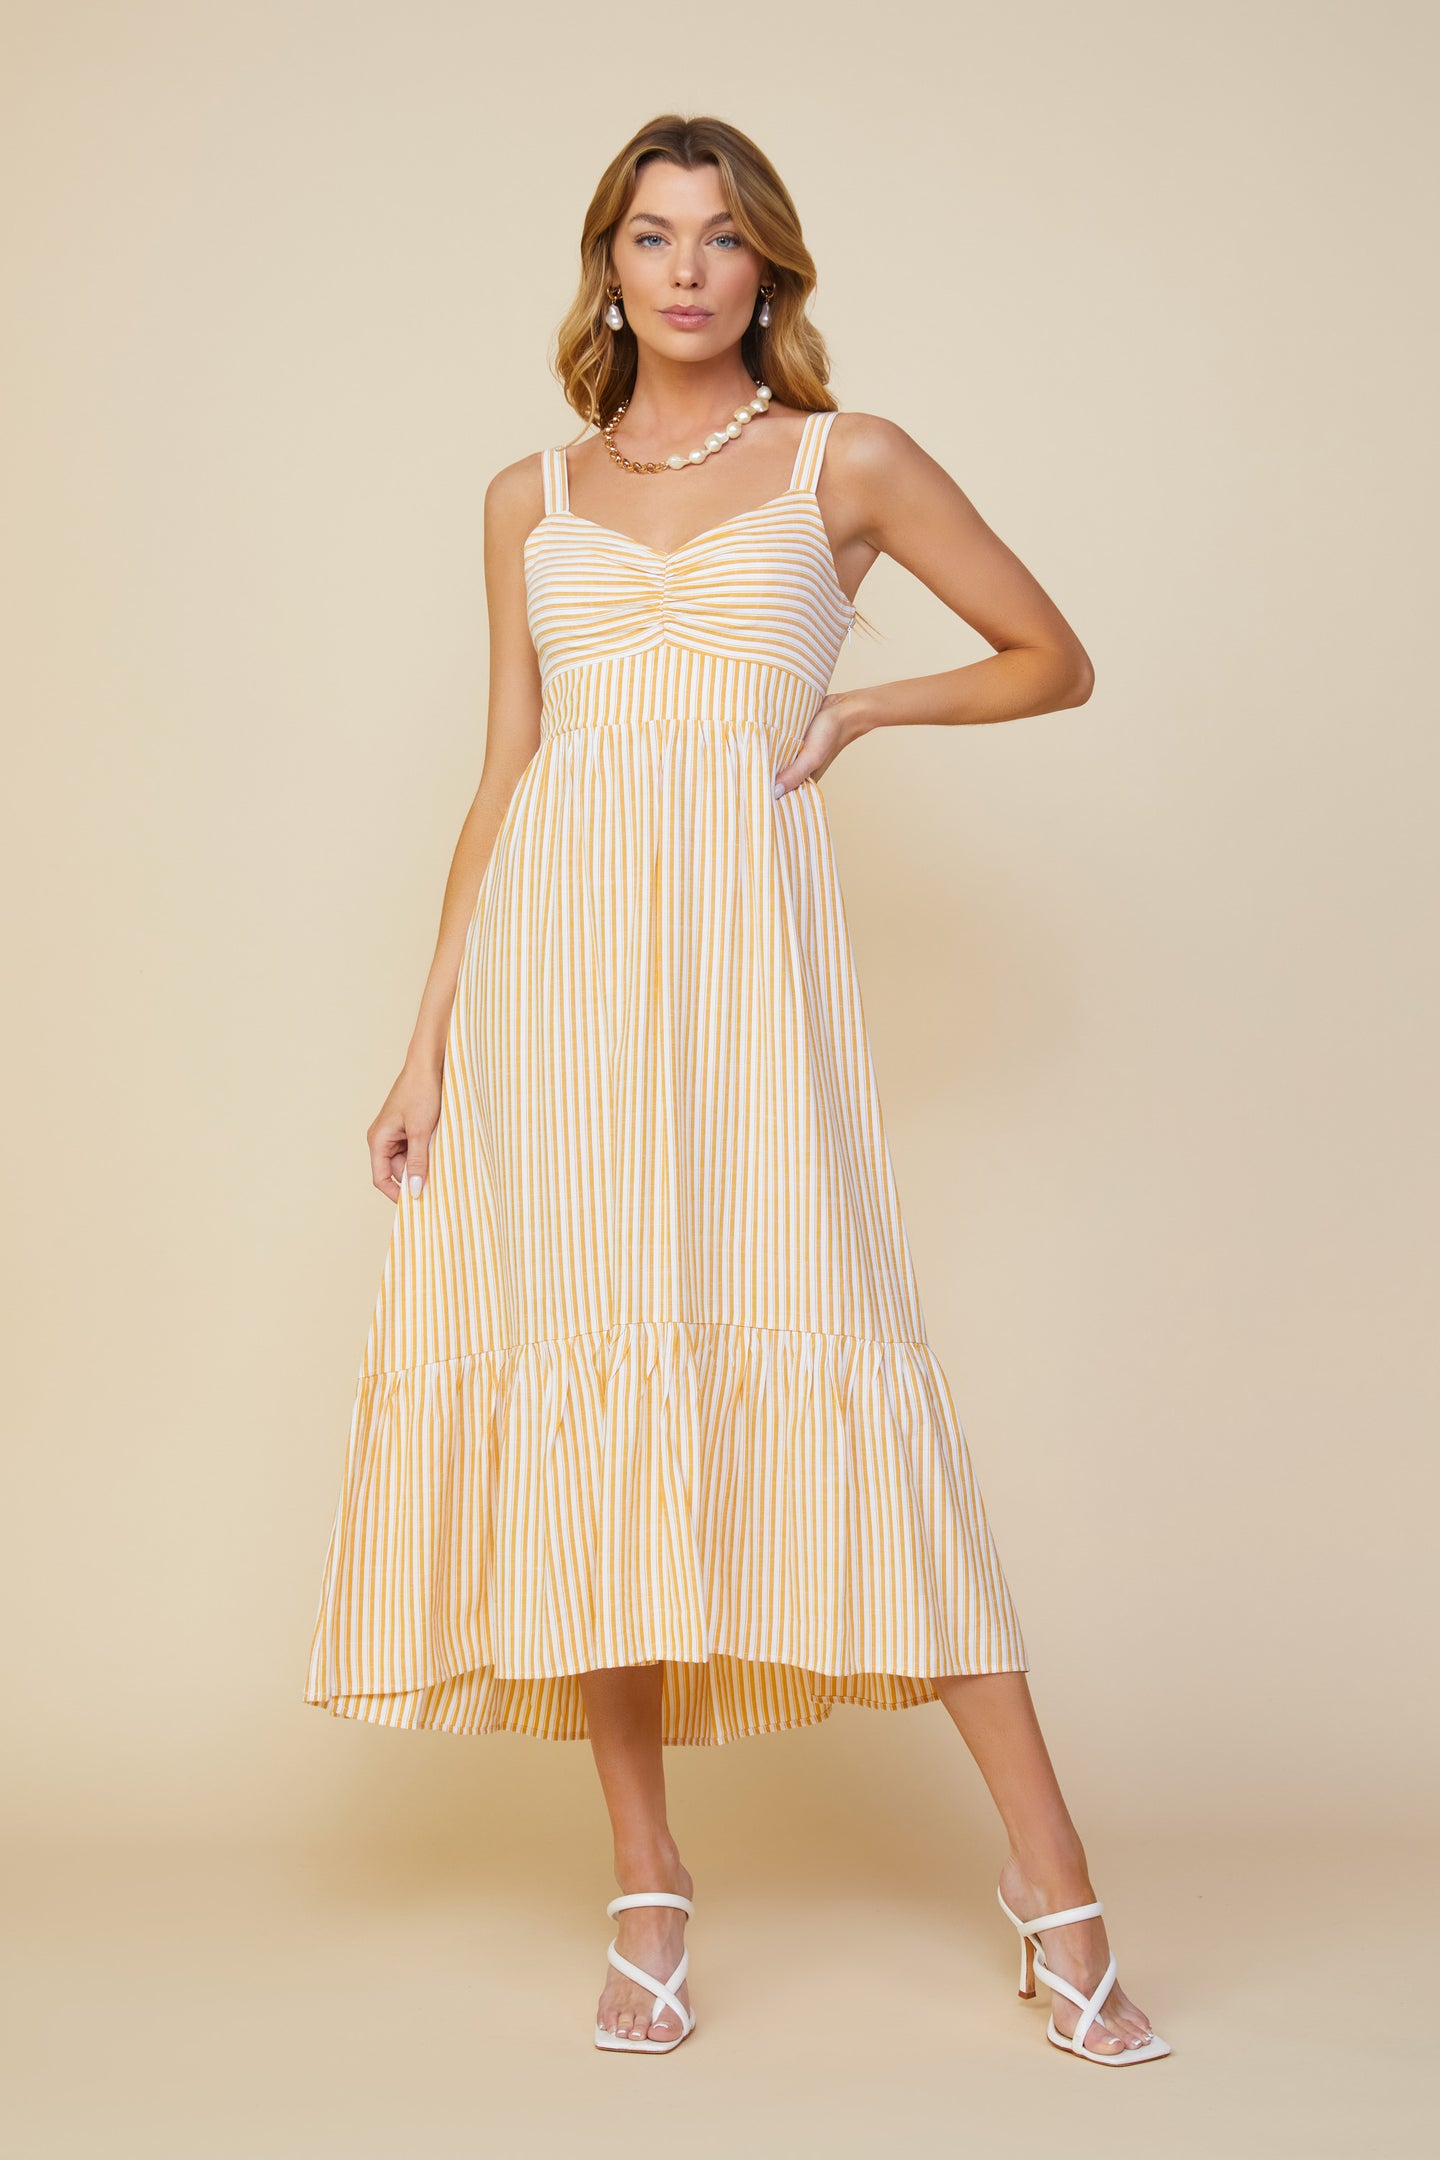 Skylie Striped Maxi Dress